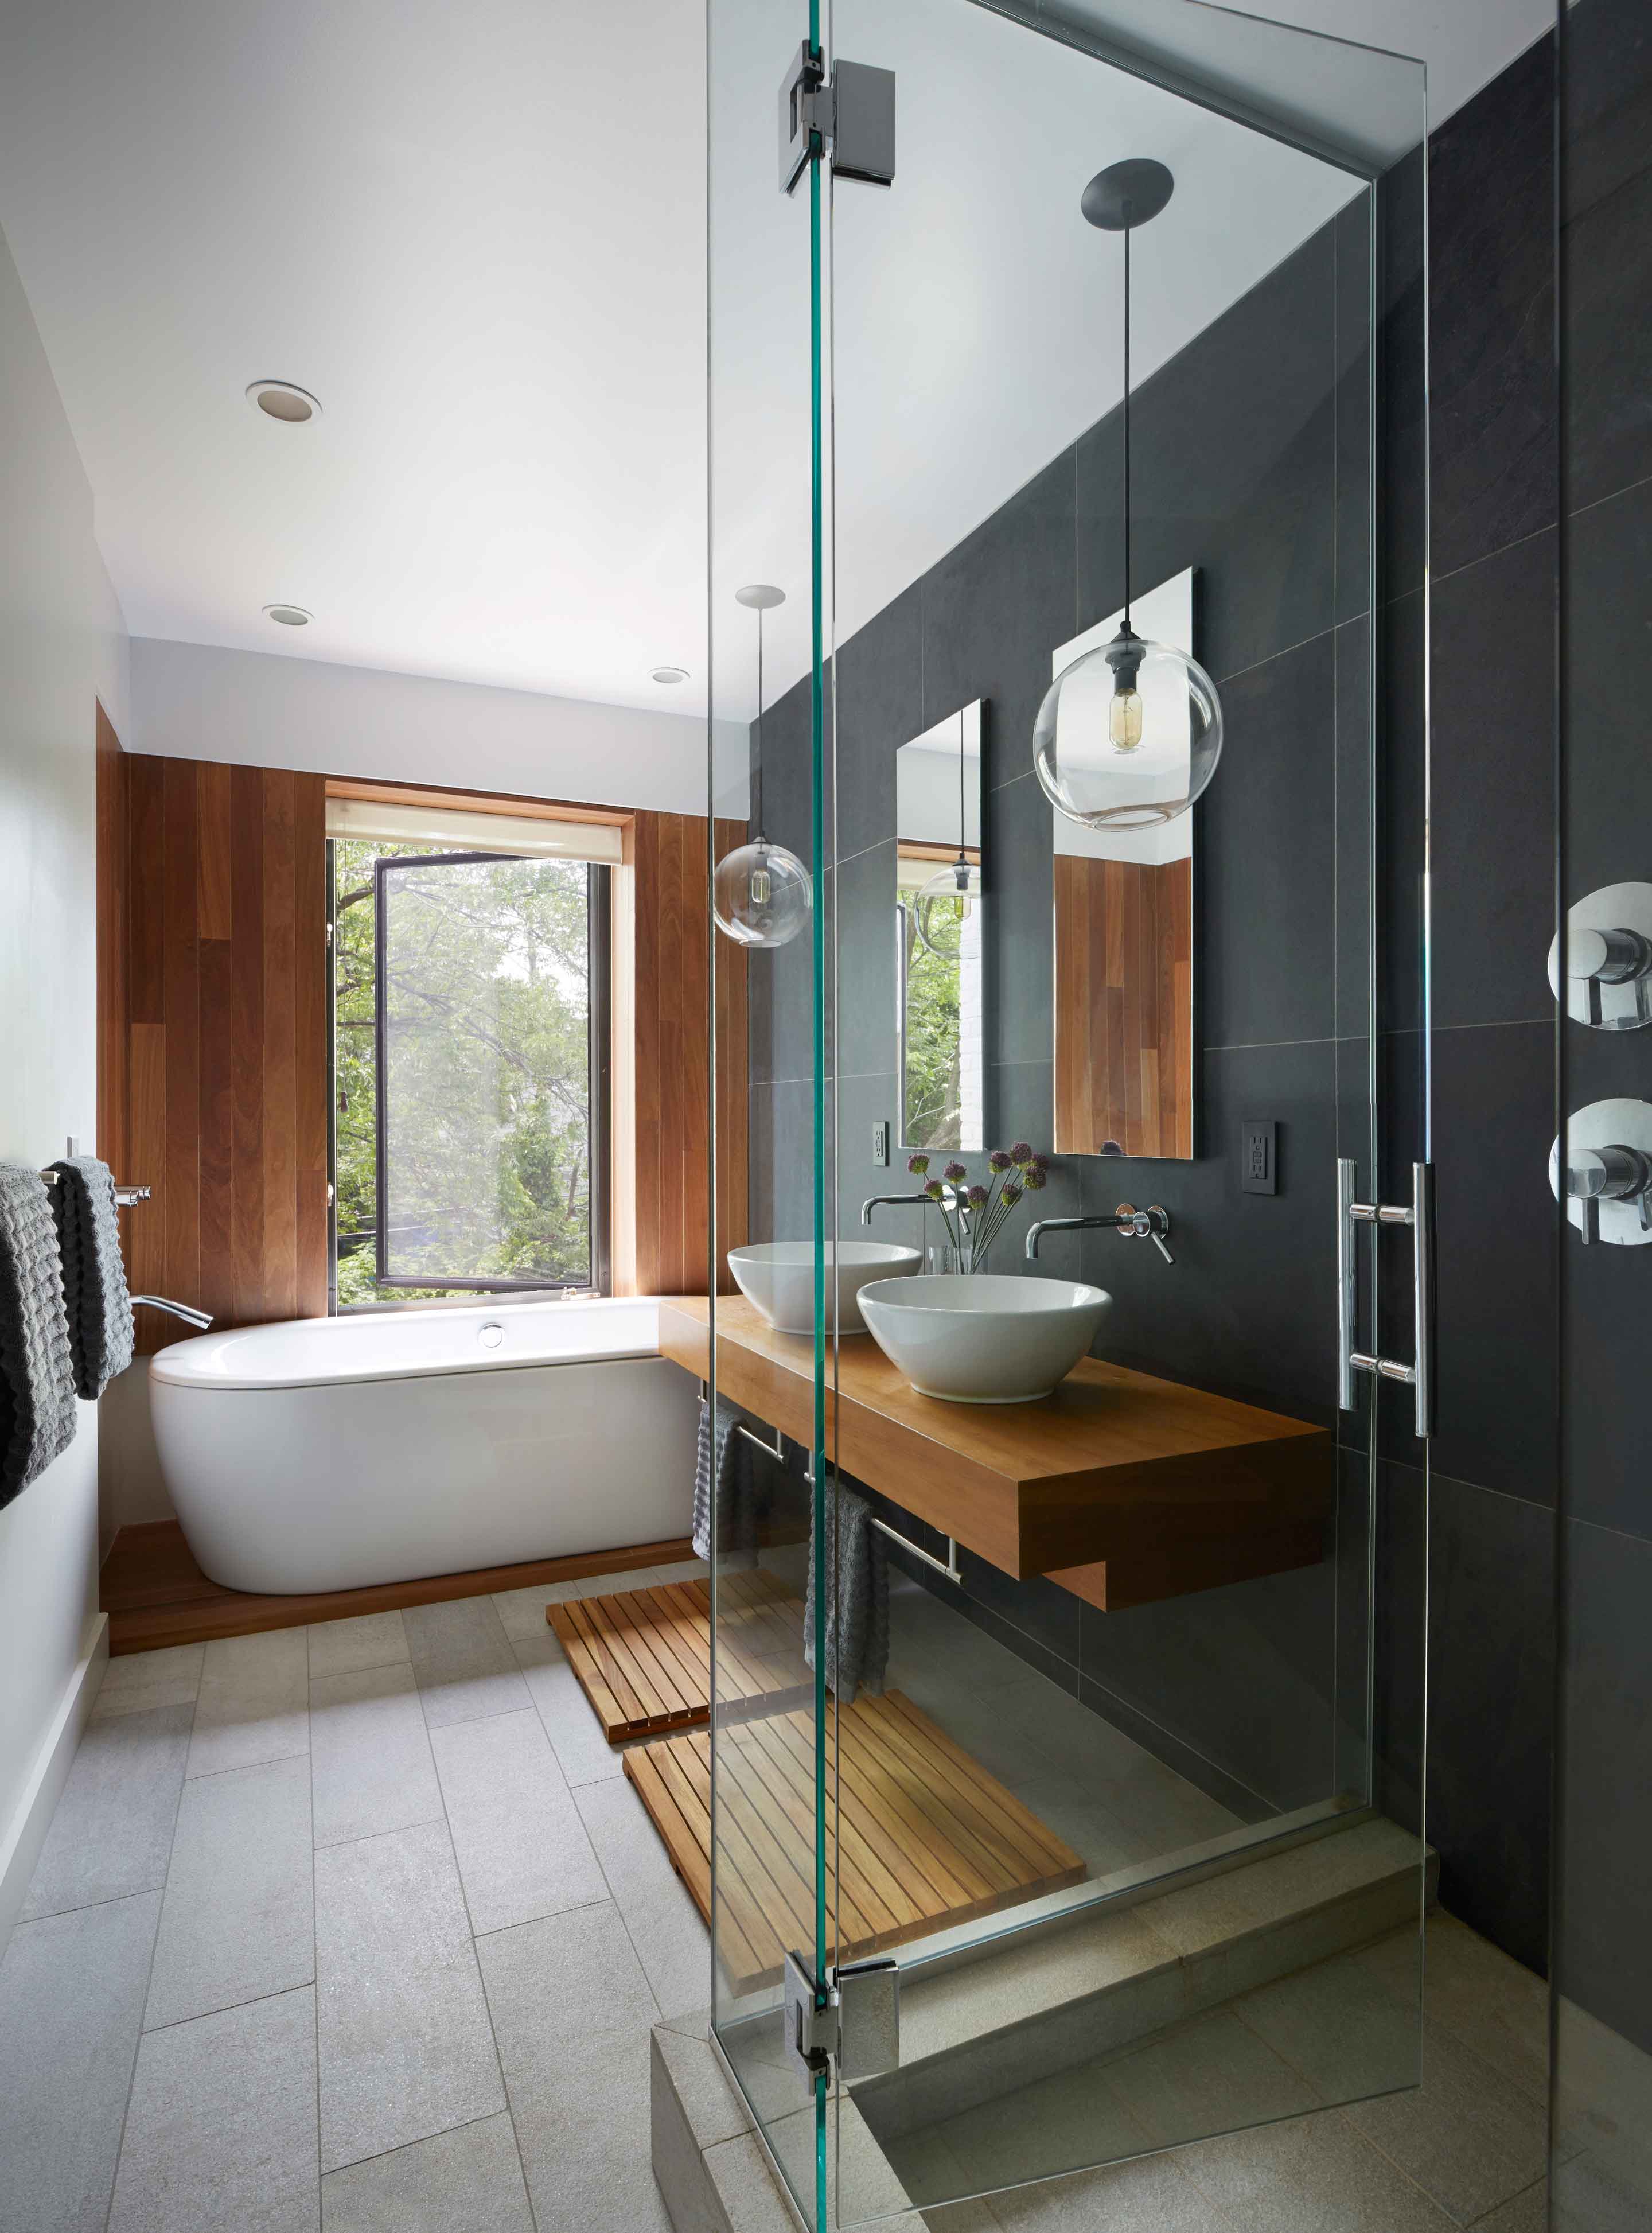 Черно-белая ванная комната с деревянной мебелью